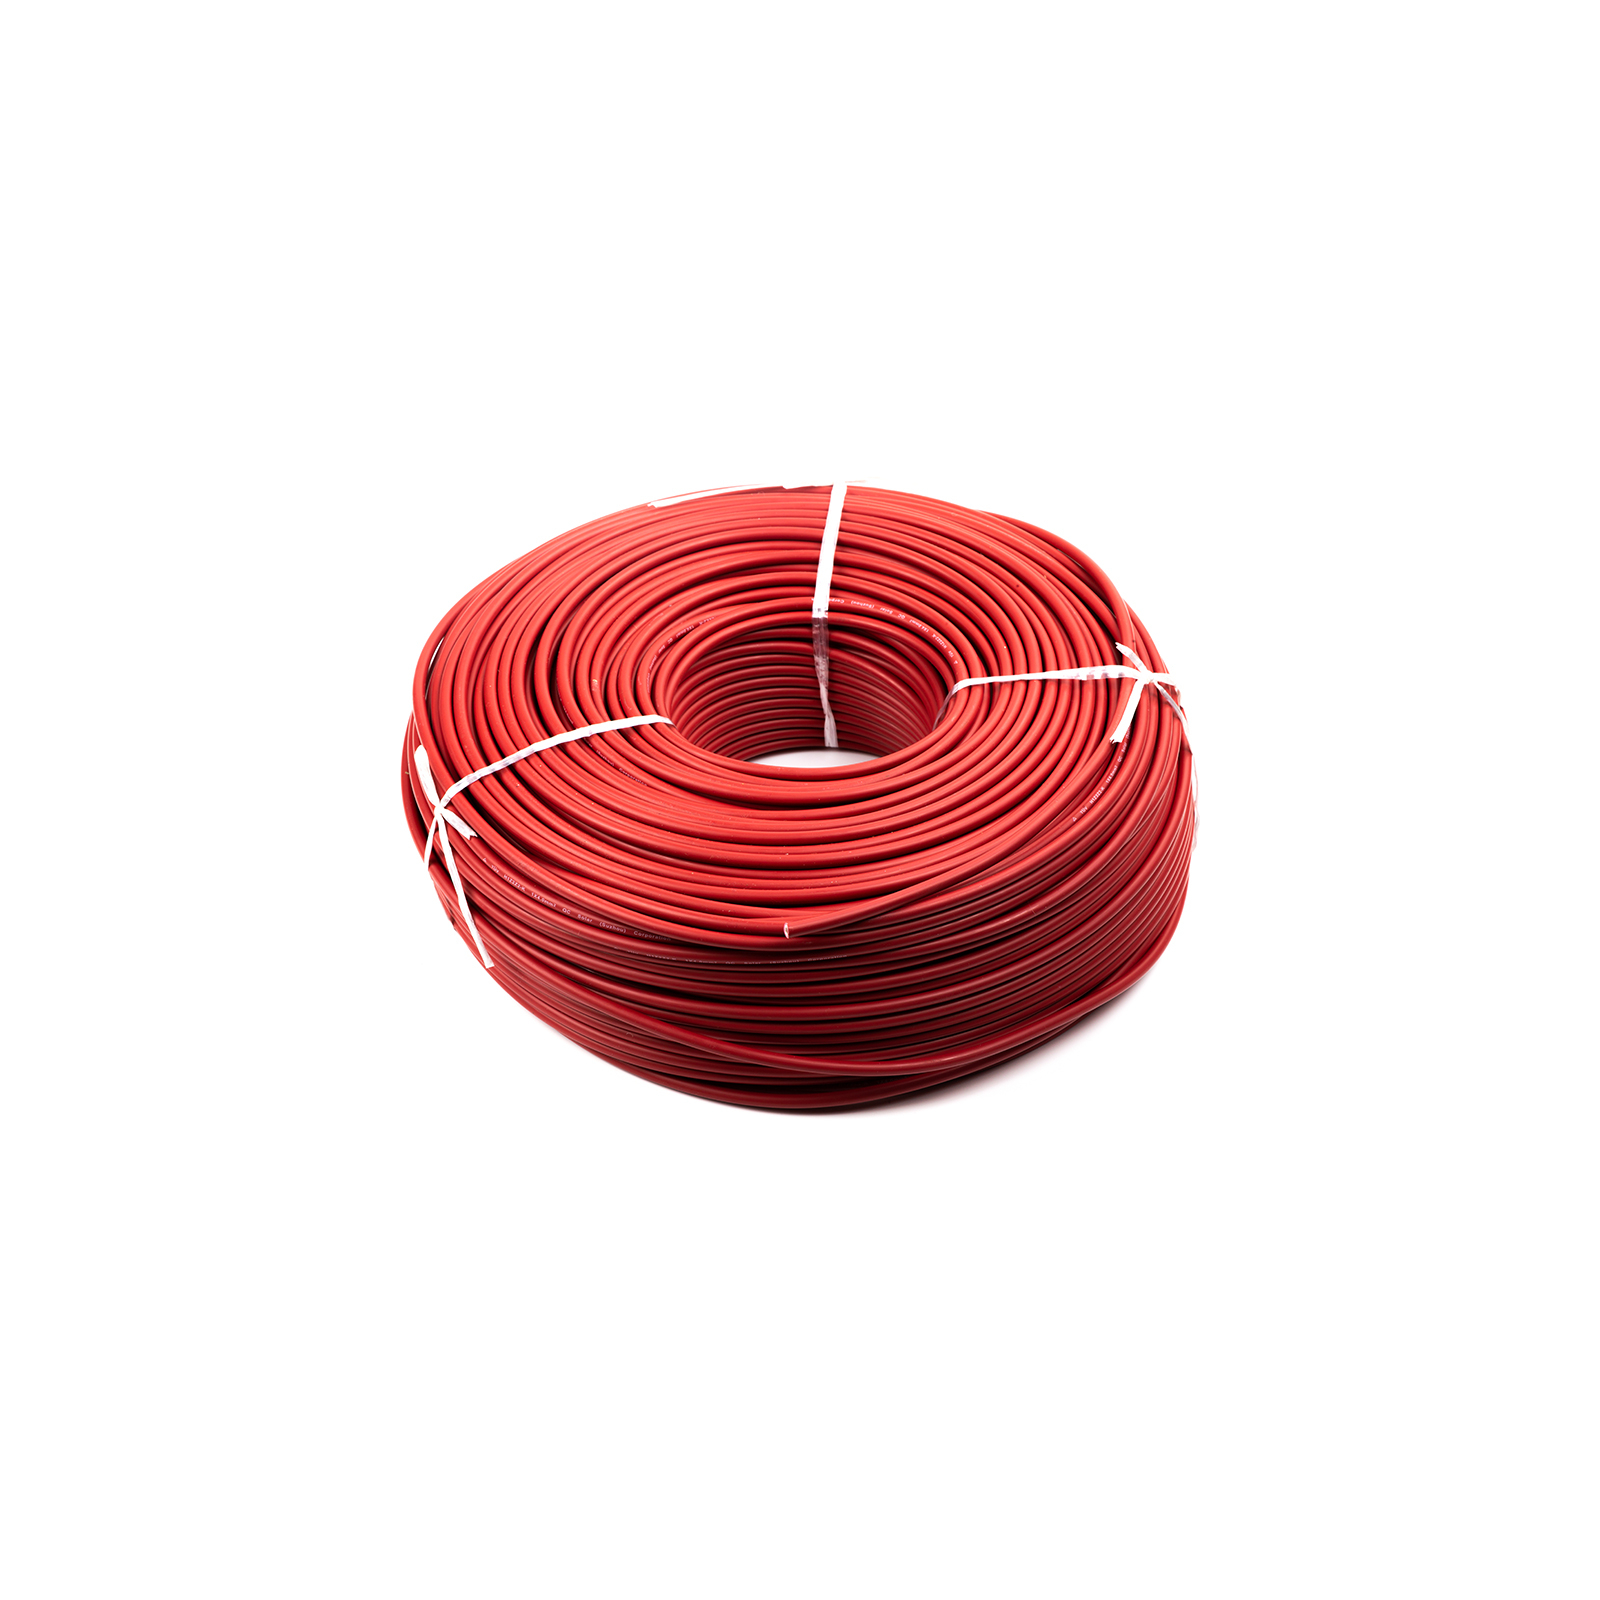 Кабель силовий PV кабель 4 мм, red, 200м=1бхт HiSmart (NV820085)